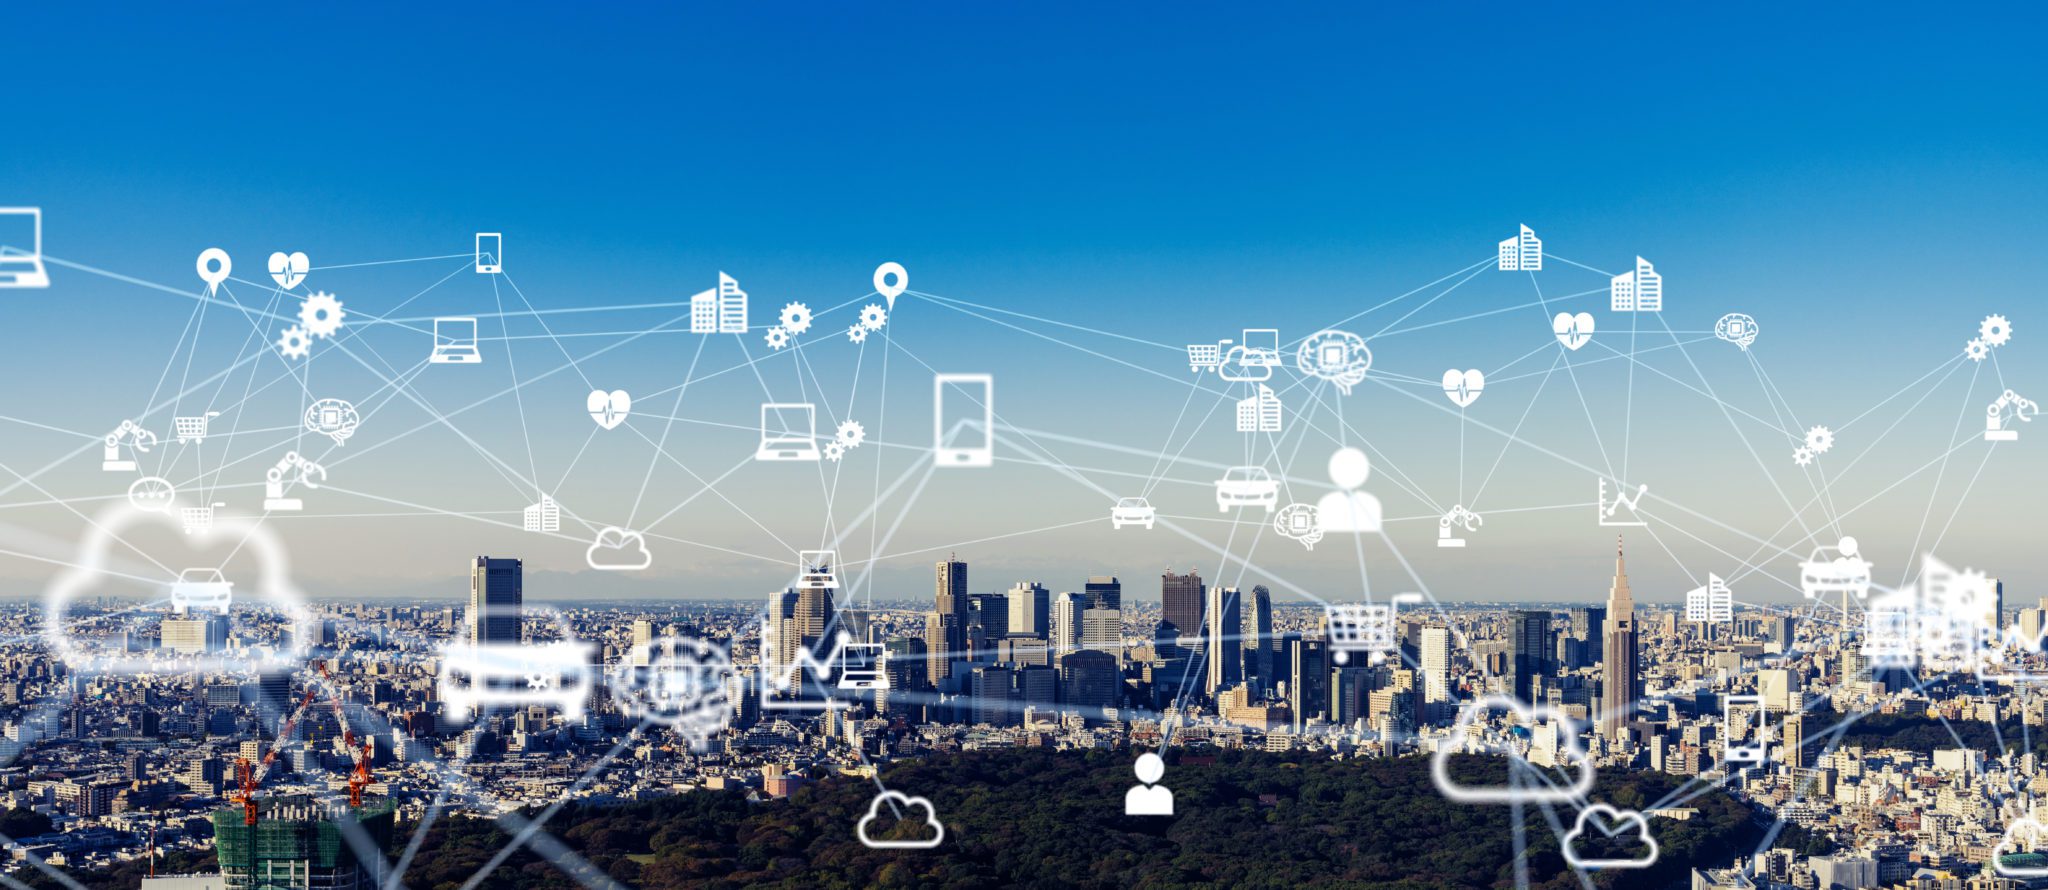 IoT in Smart Cities in 2022